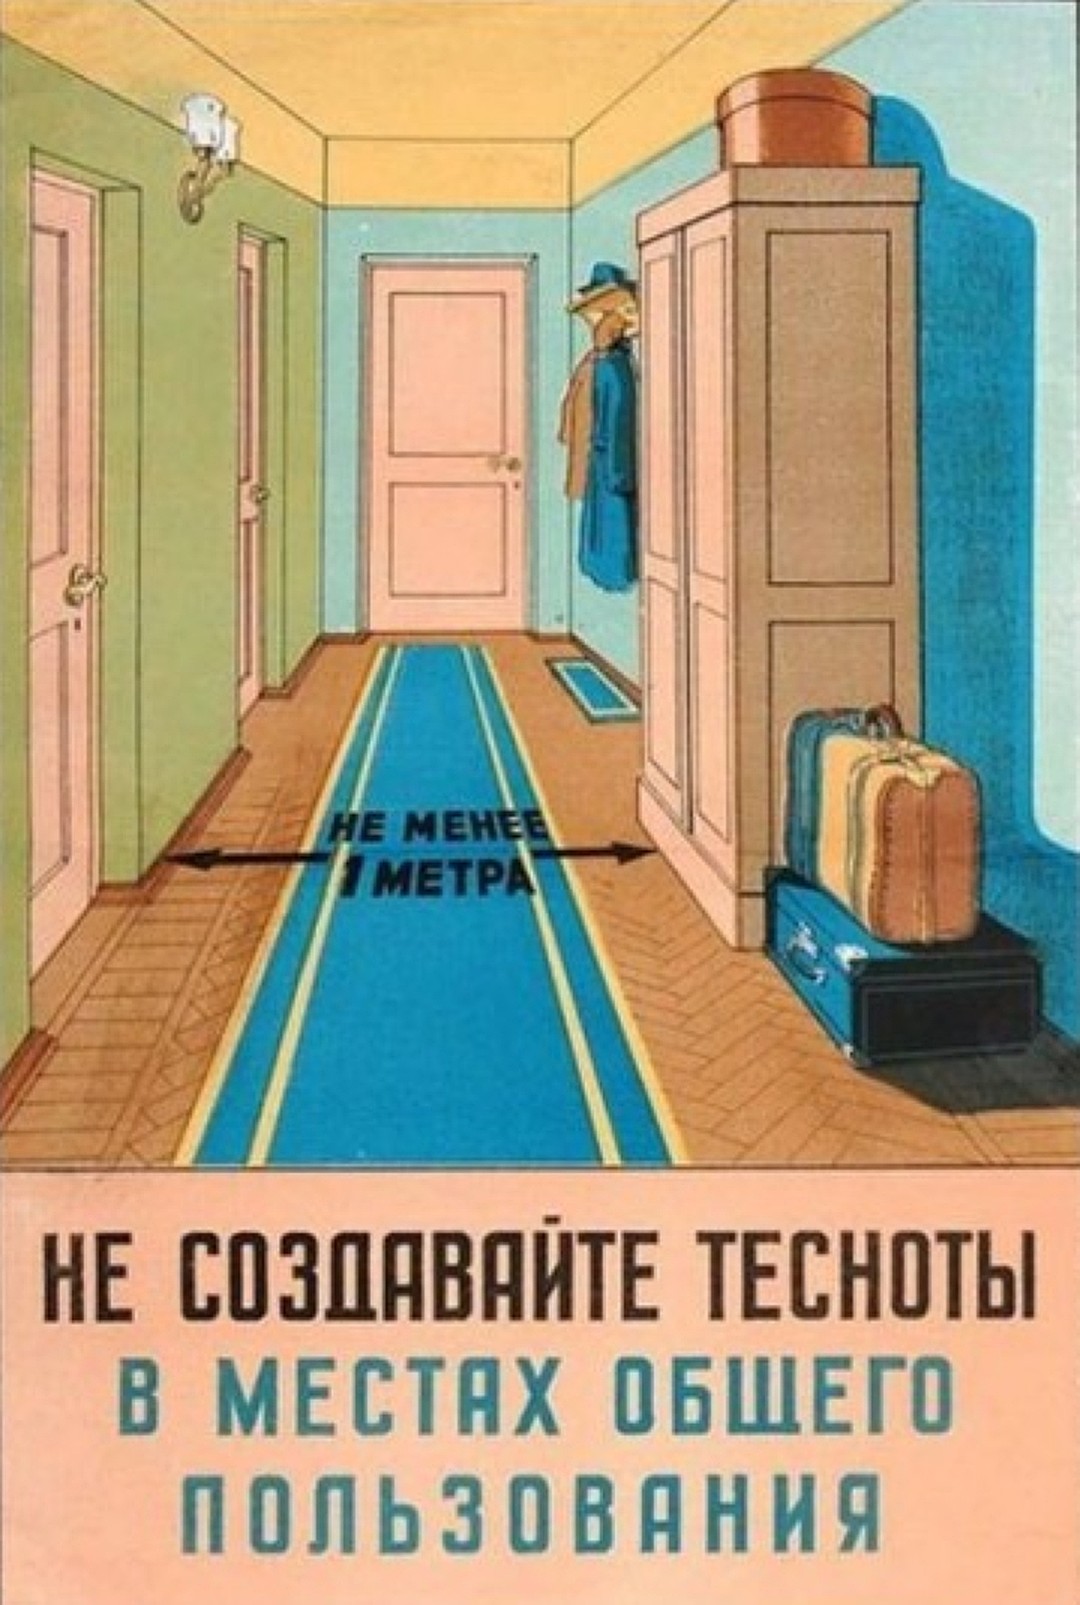 Советский плакат 1952 года. Автор Владимир Пейда 